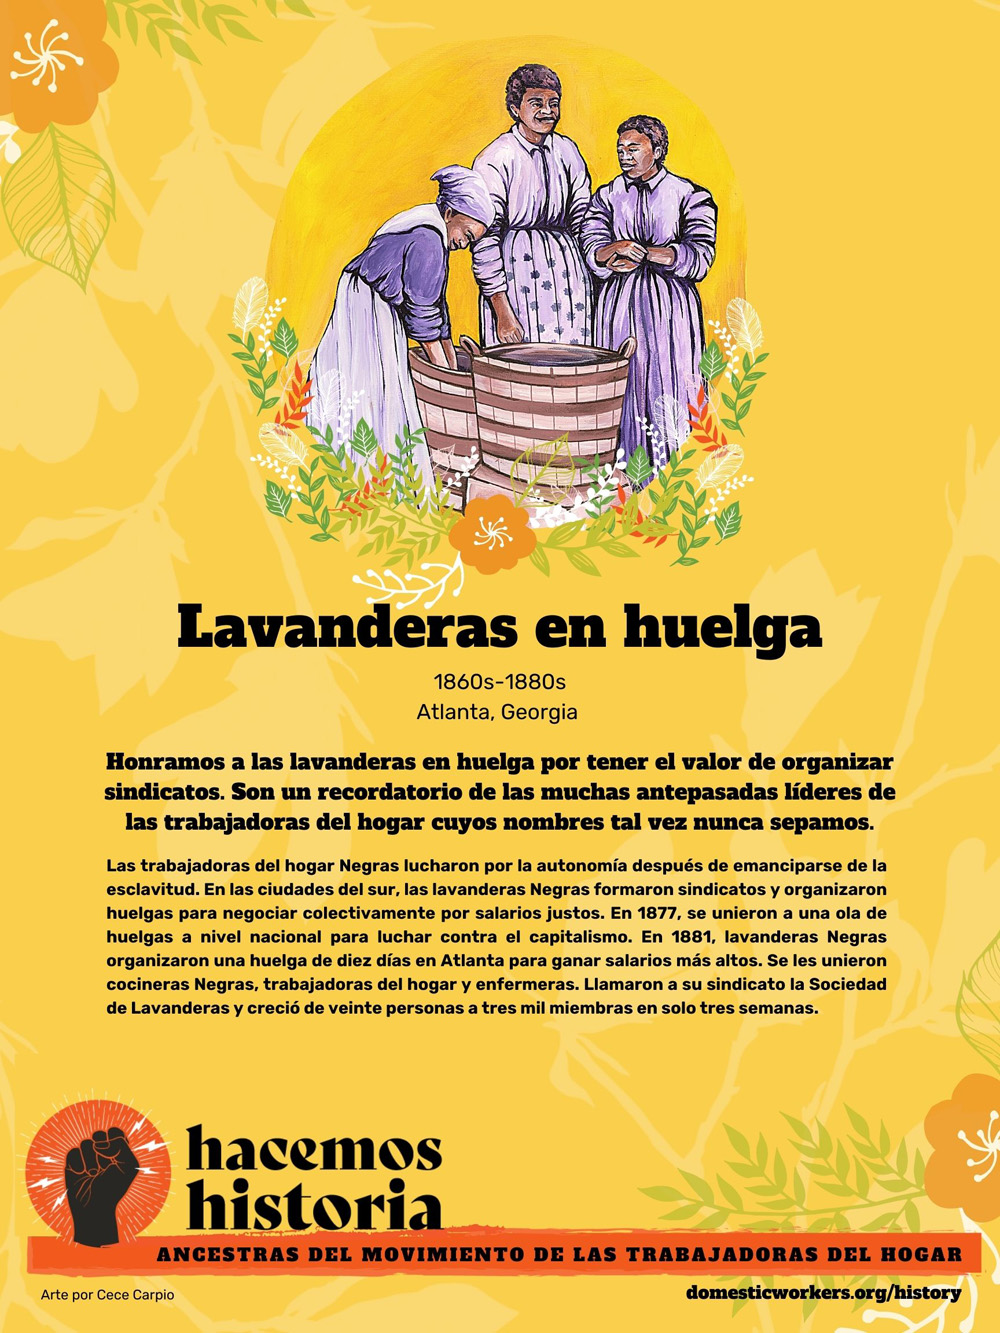 Retratos de las ancestras del movimiento de trabajadoras de hogar: Lavanderas en huelga